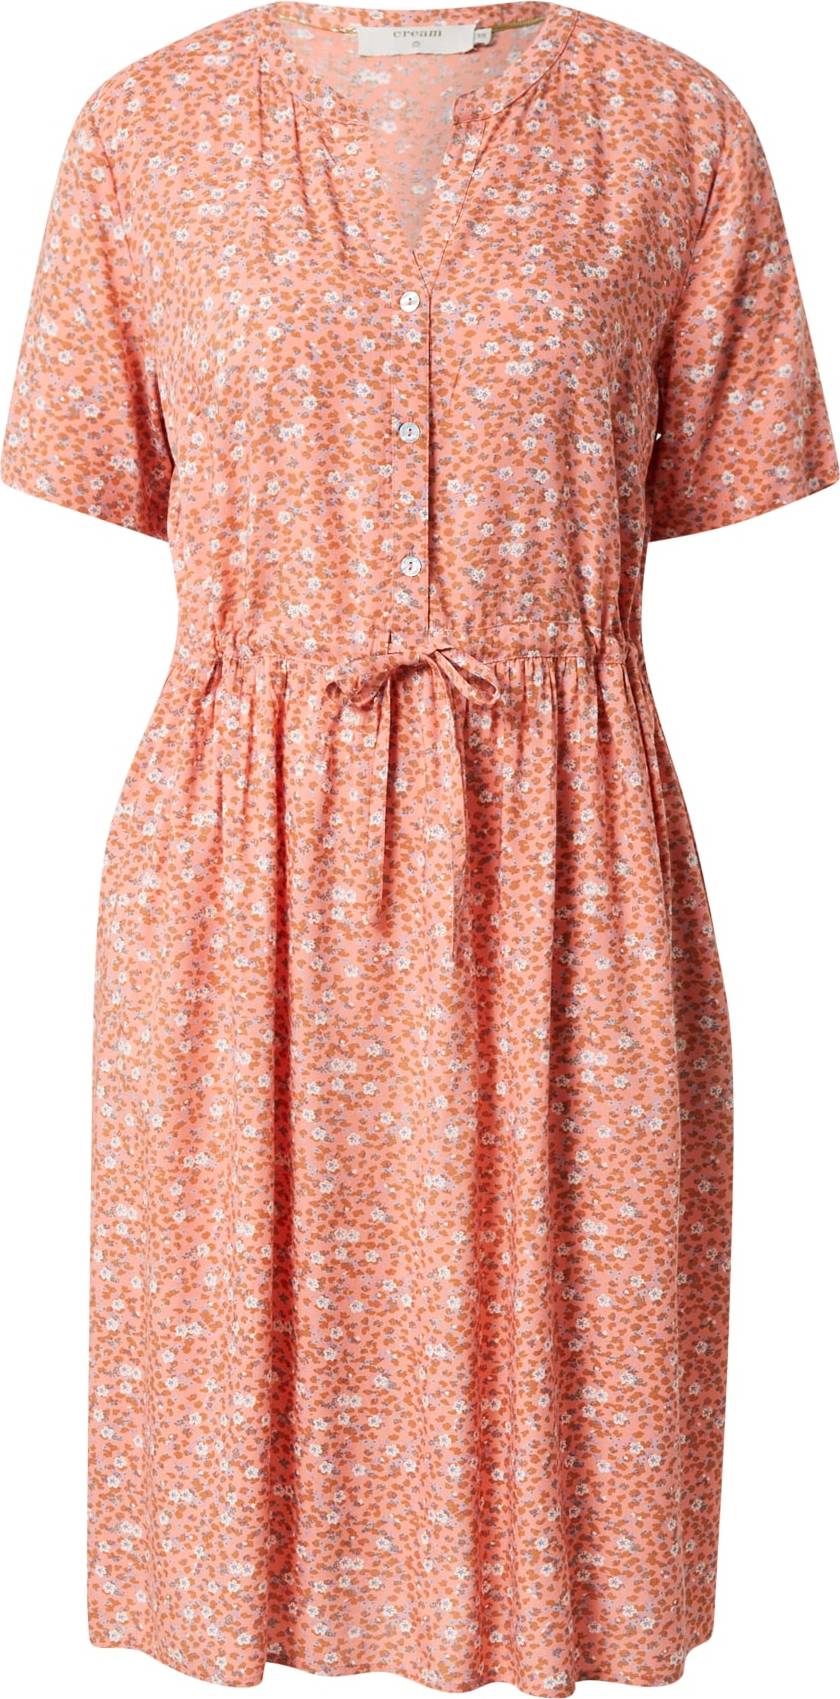 Cream Košilové šaty 'Ferina' světlemodrá / lososová / tmavě oranžová / bílá